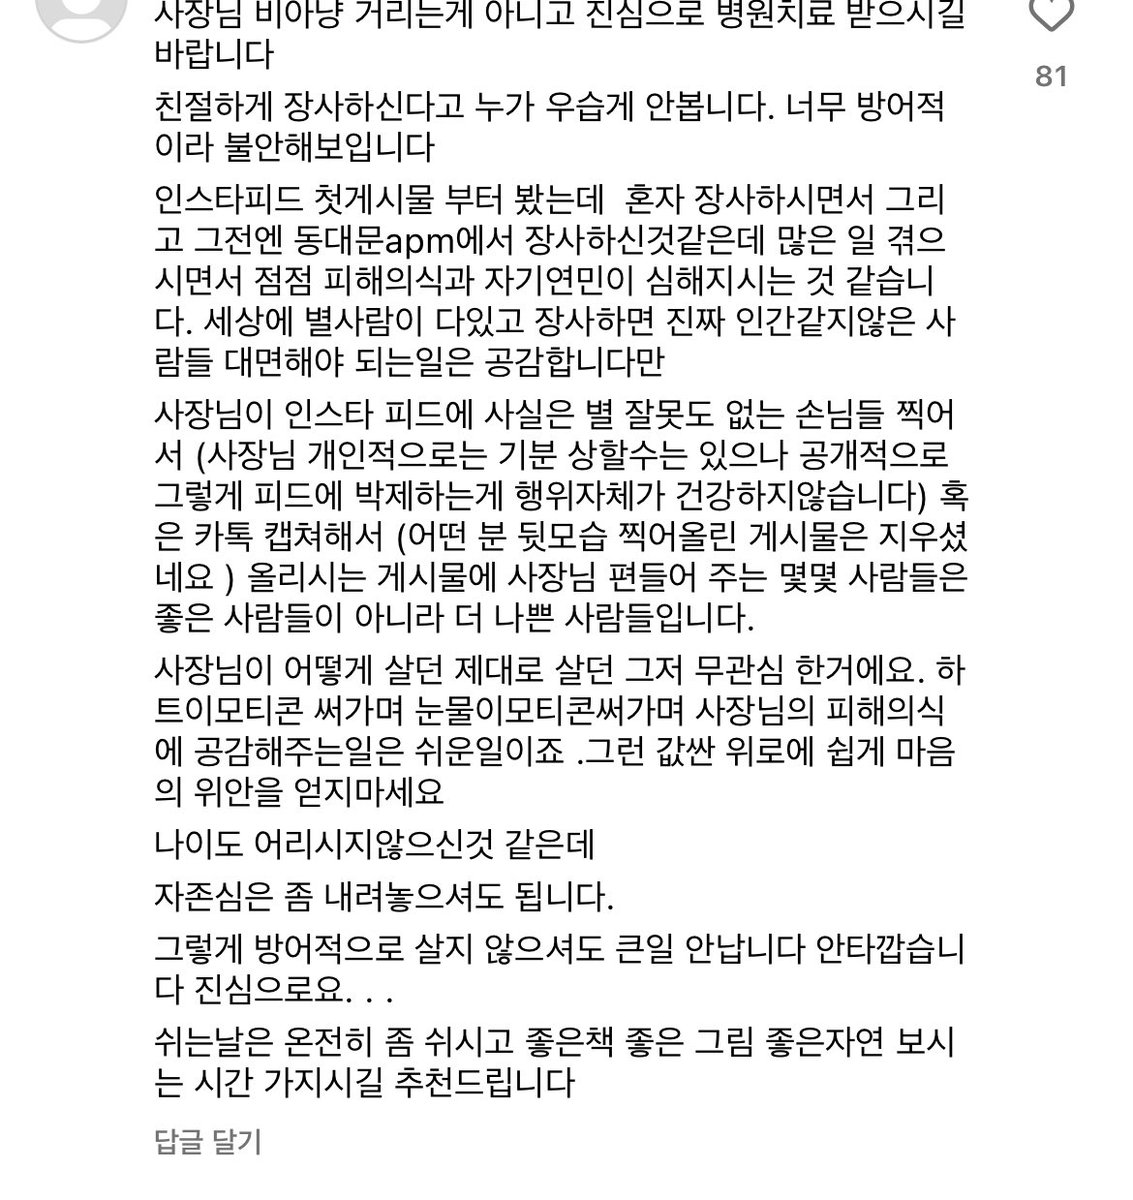 저 김밥사장 인스타에 되게 좋은 답글이 있어서 공유.. 동료시민으로서 해줄 수 있는 가장 사려깊고 친절한 글 같음